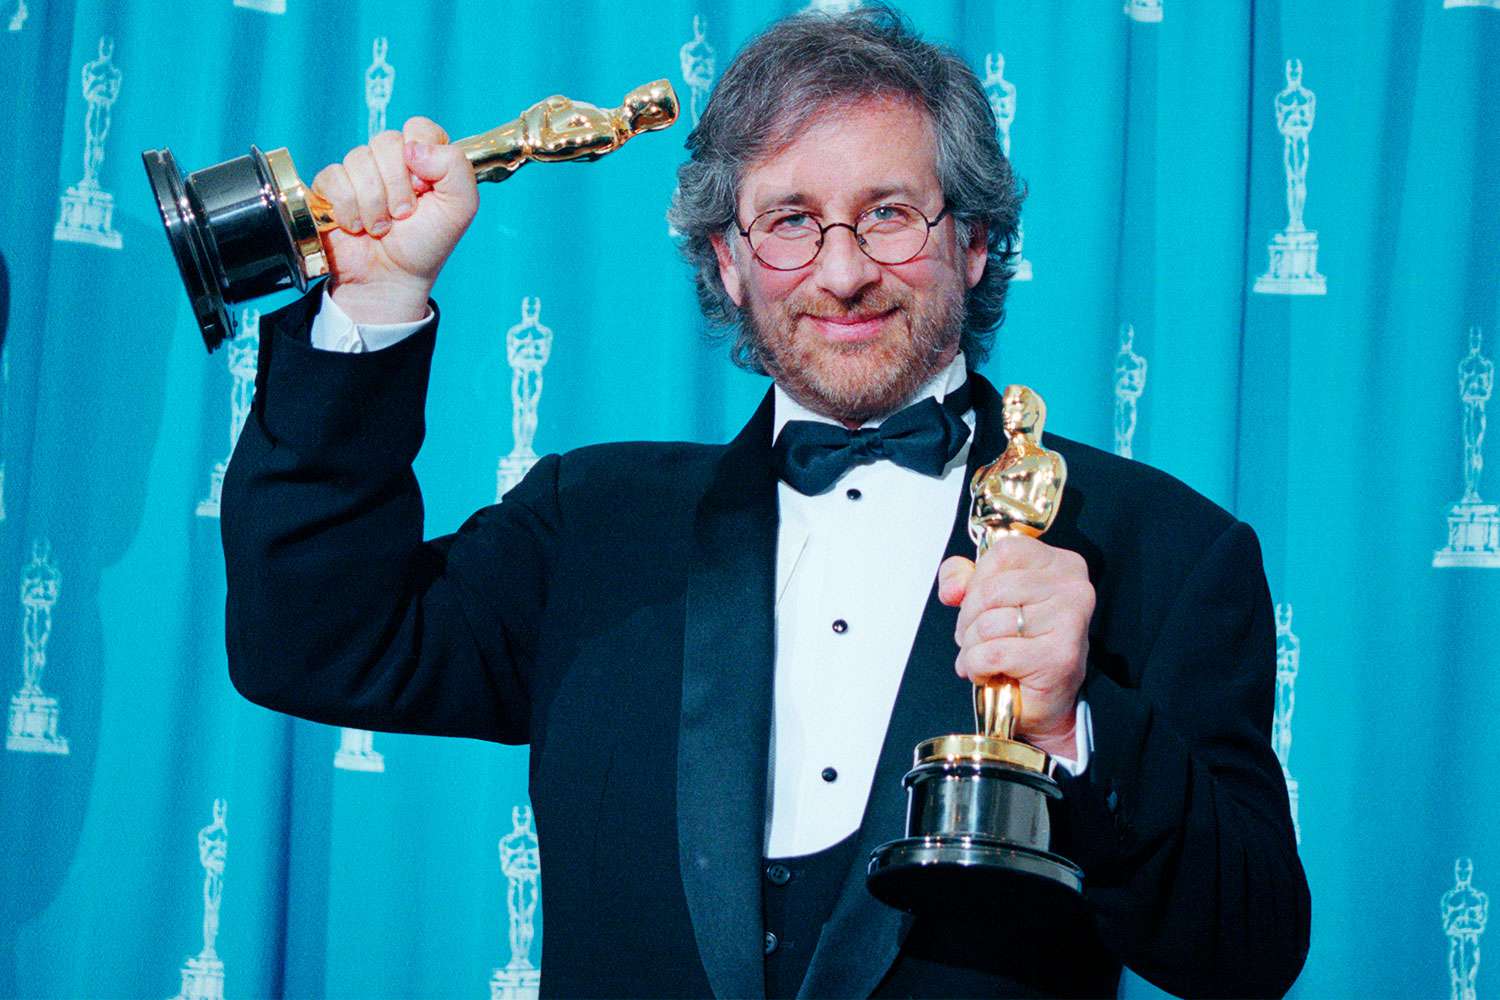 Povestea nestiuta a lui Steven Spielberg: azi e unul dintre cei mai bogati realizatori de film din lume, dar a picat admiterea de trei ori